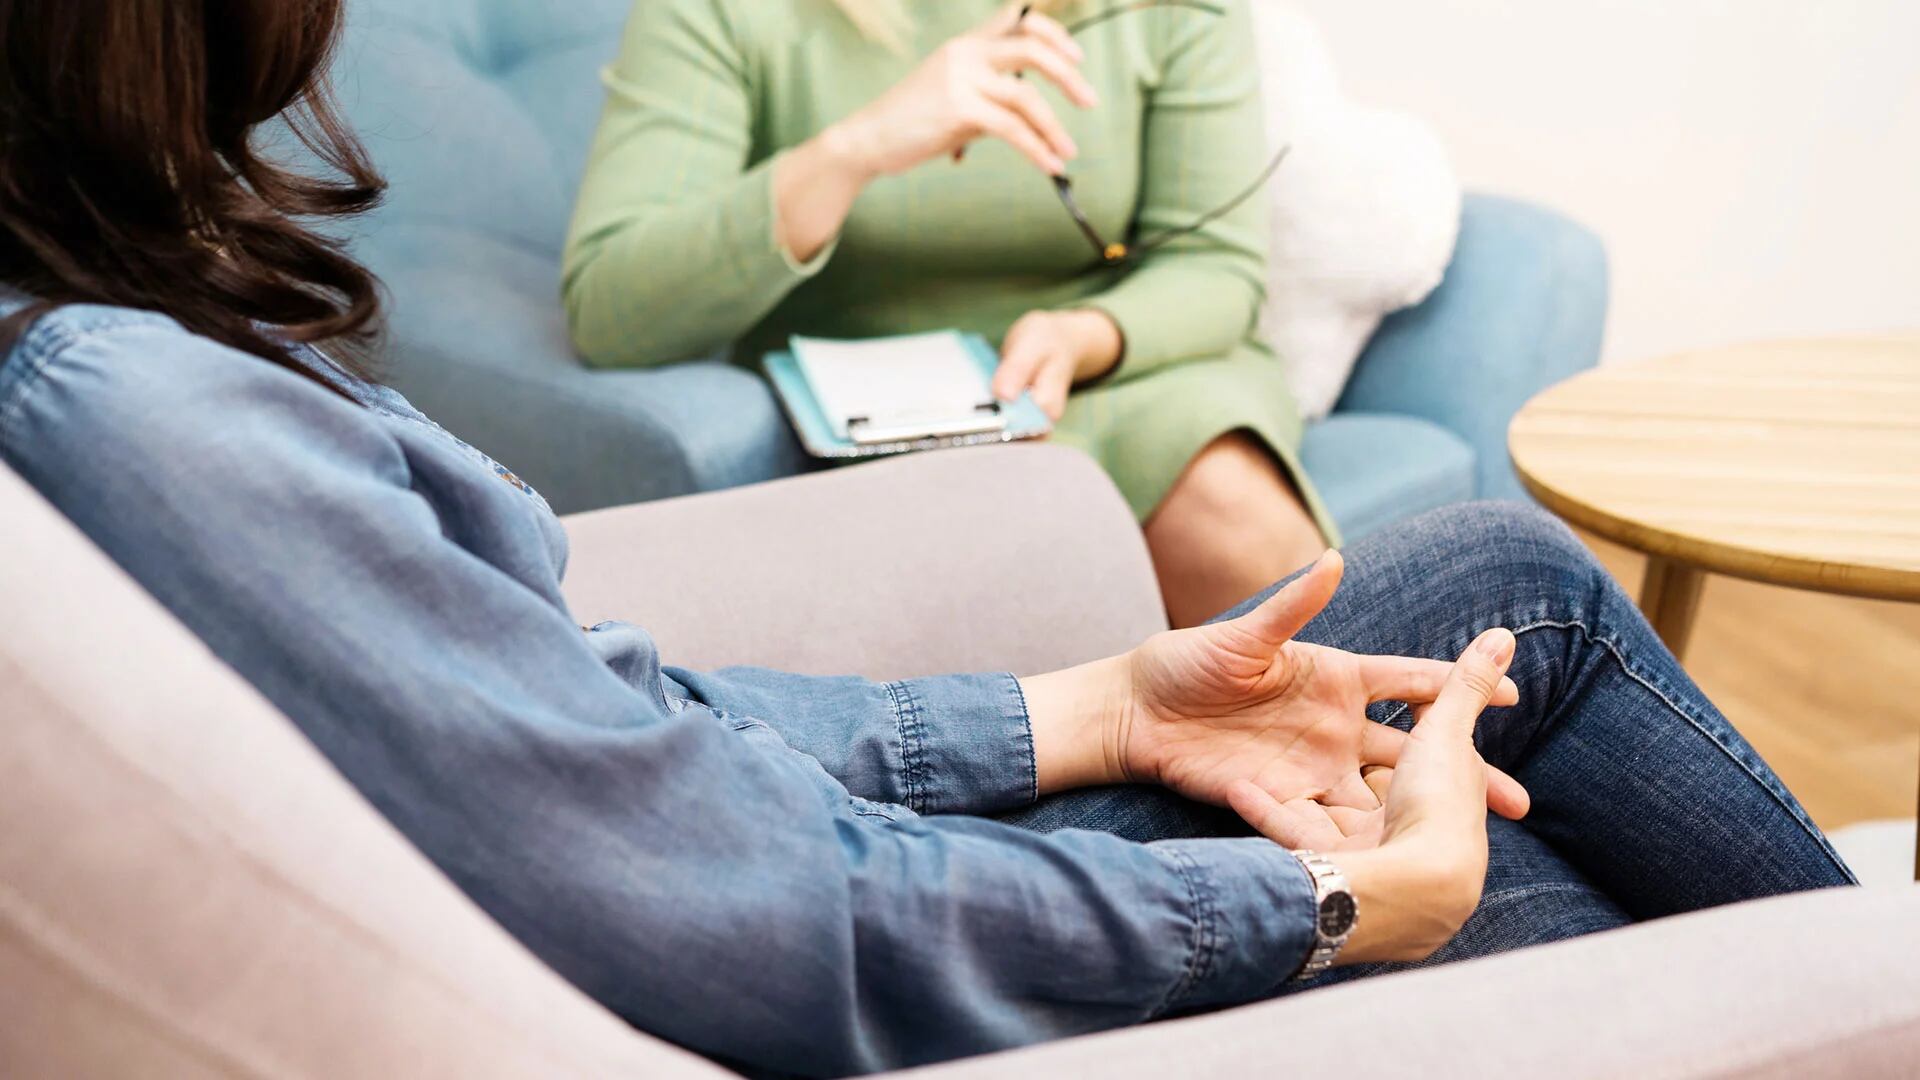 La terapia es útil para que el paciente pueda recibir asesoramiento profesional en lo relacionado a salud mental (Getty)